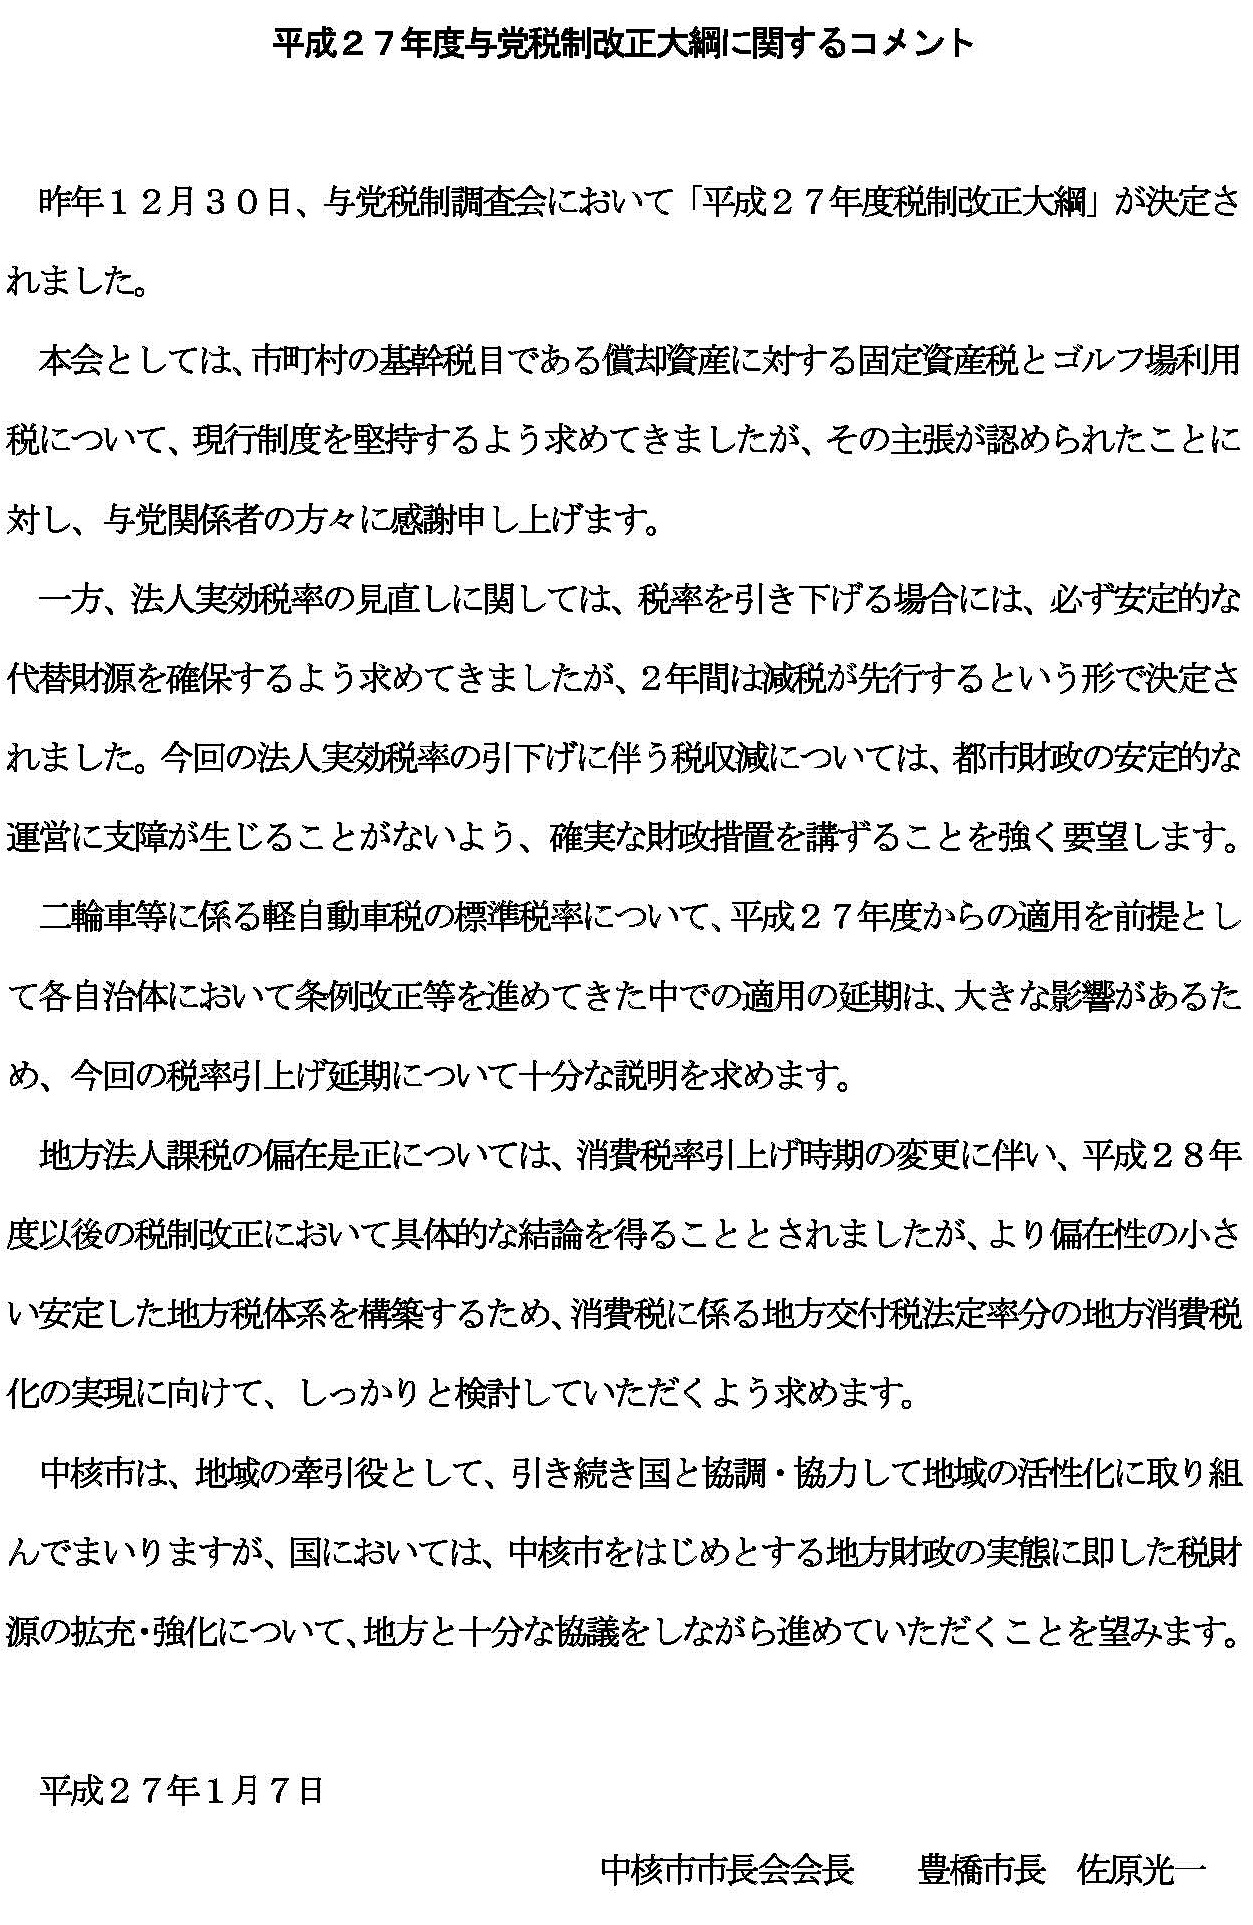 平成２７年度与党税制改正大綱に関する会長コメント.jpg